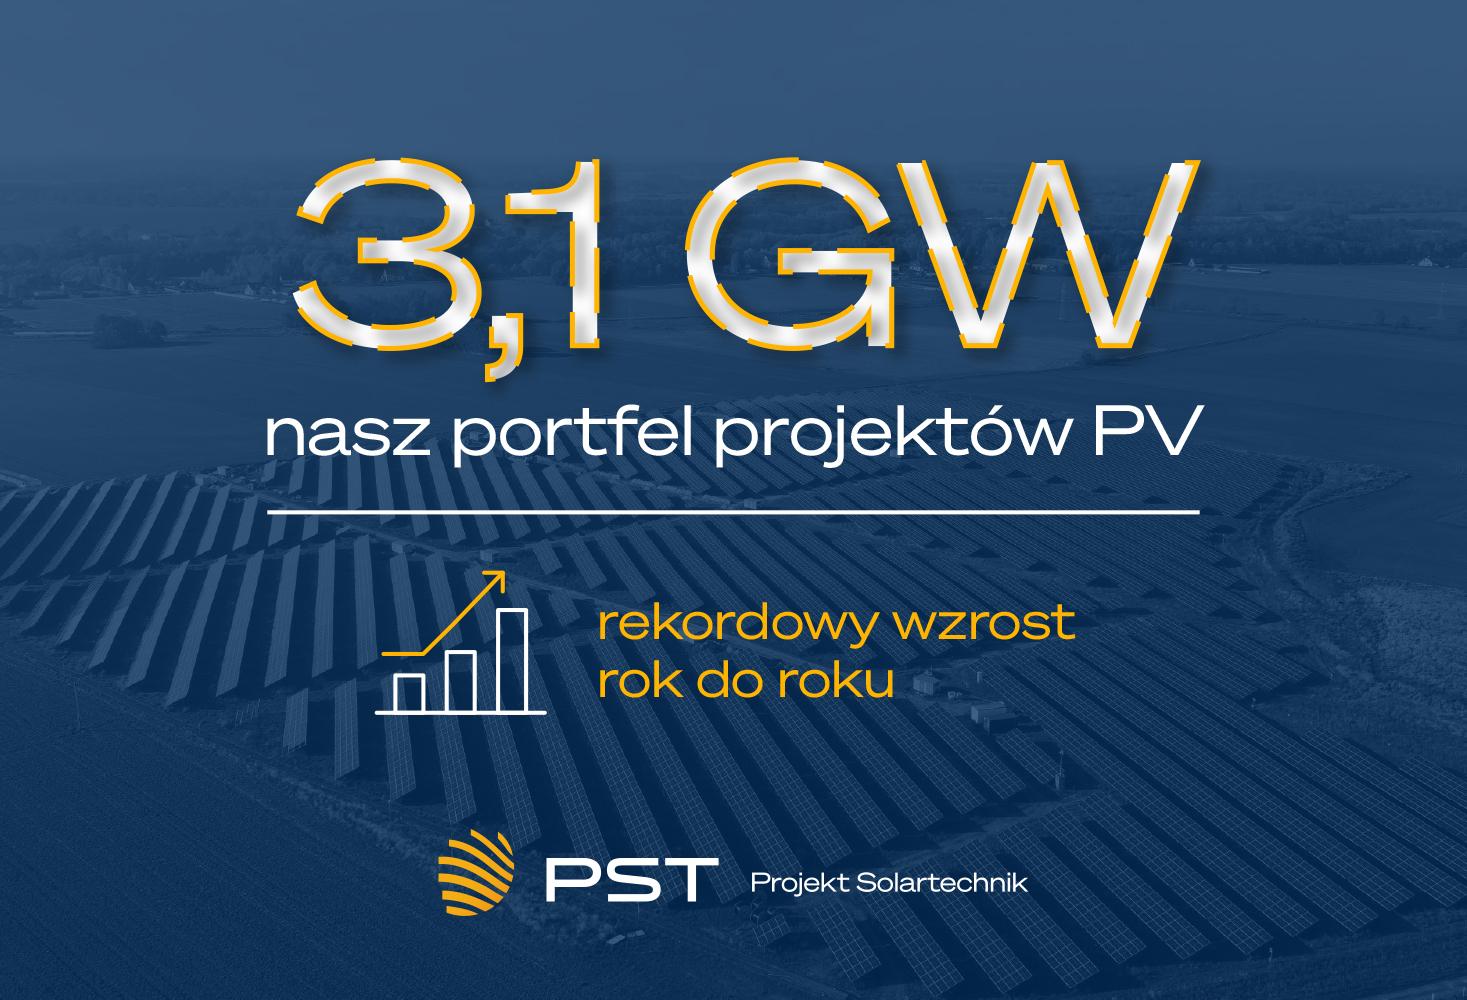 3,1 GW Projekt Solartechnik